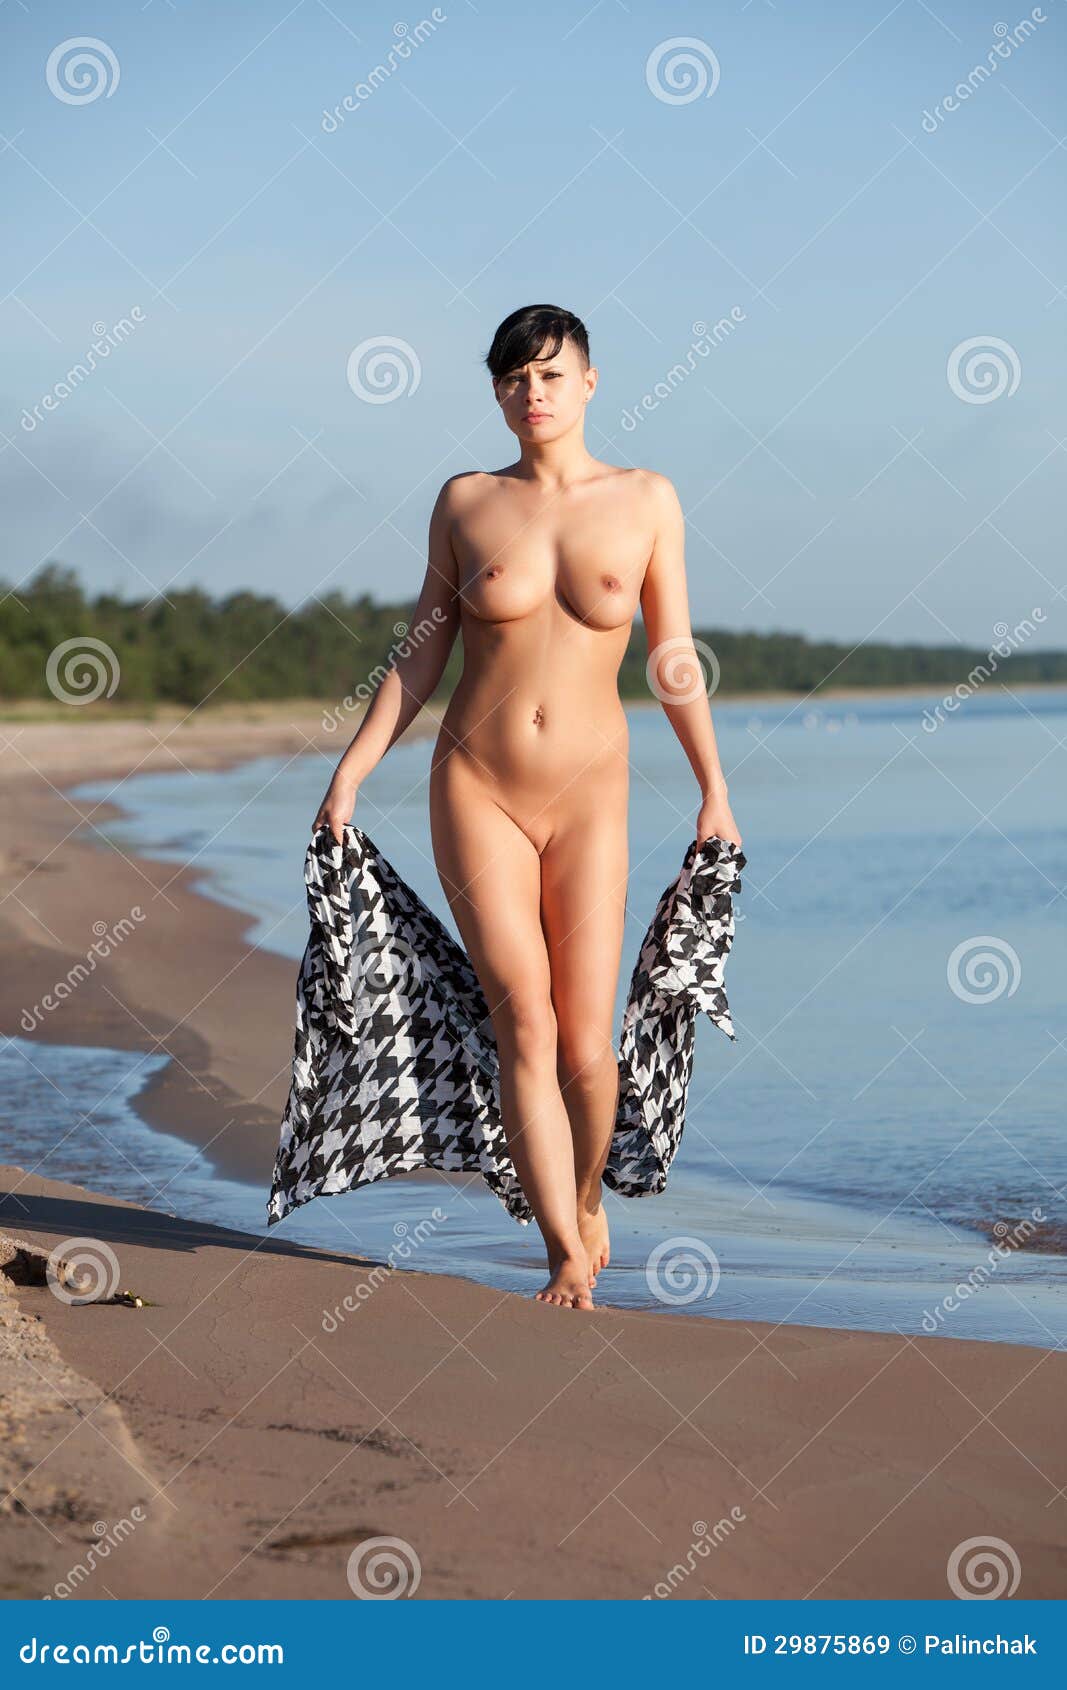 Beaches nude women on